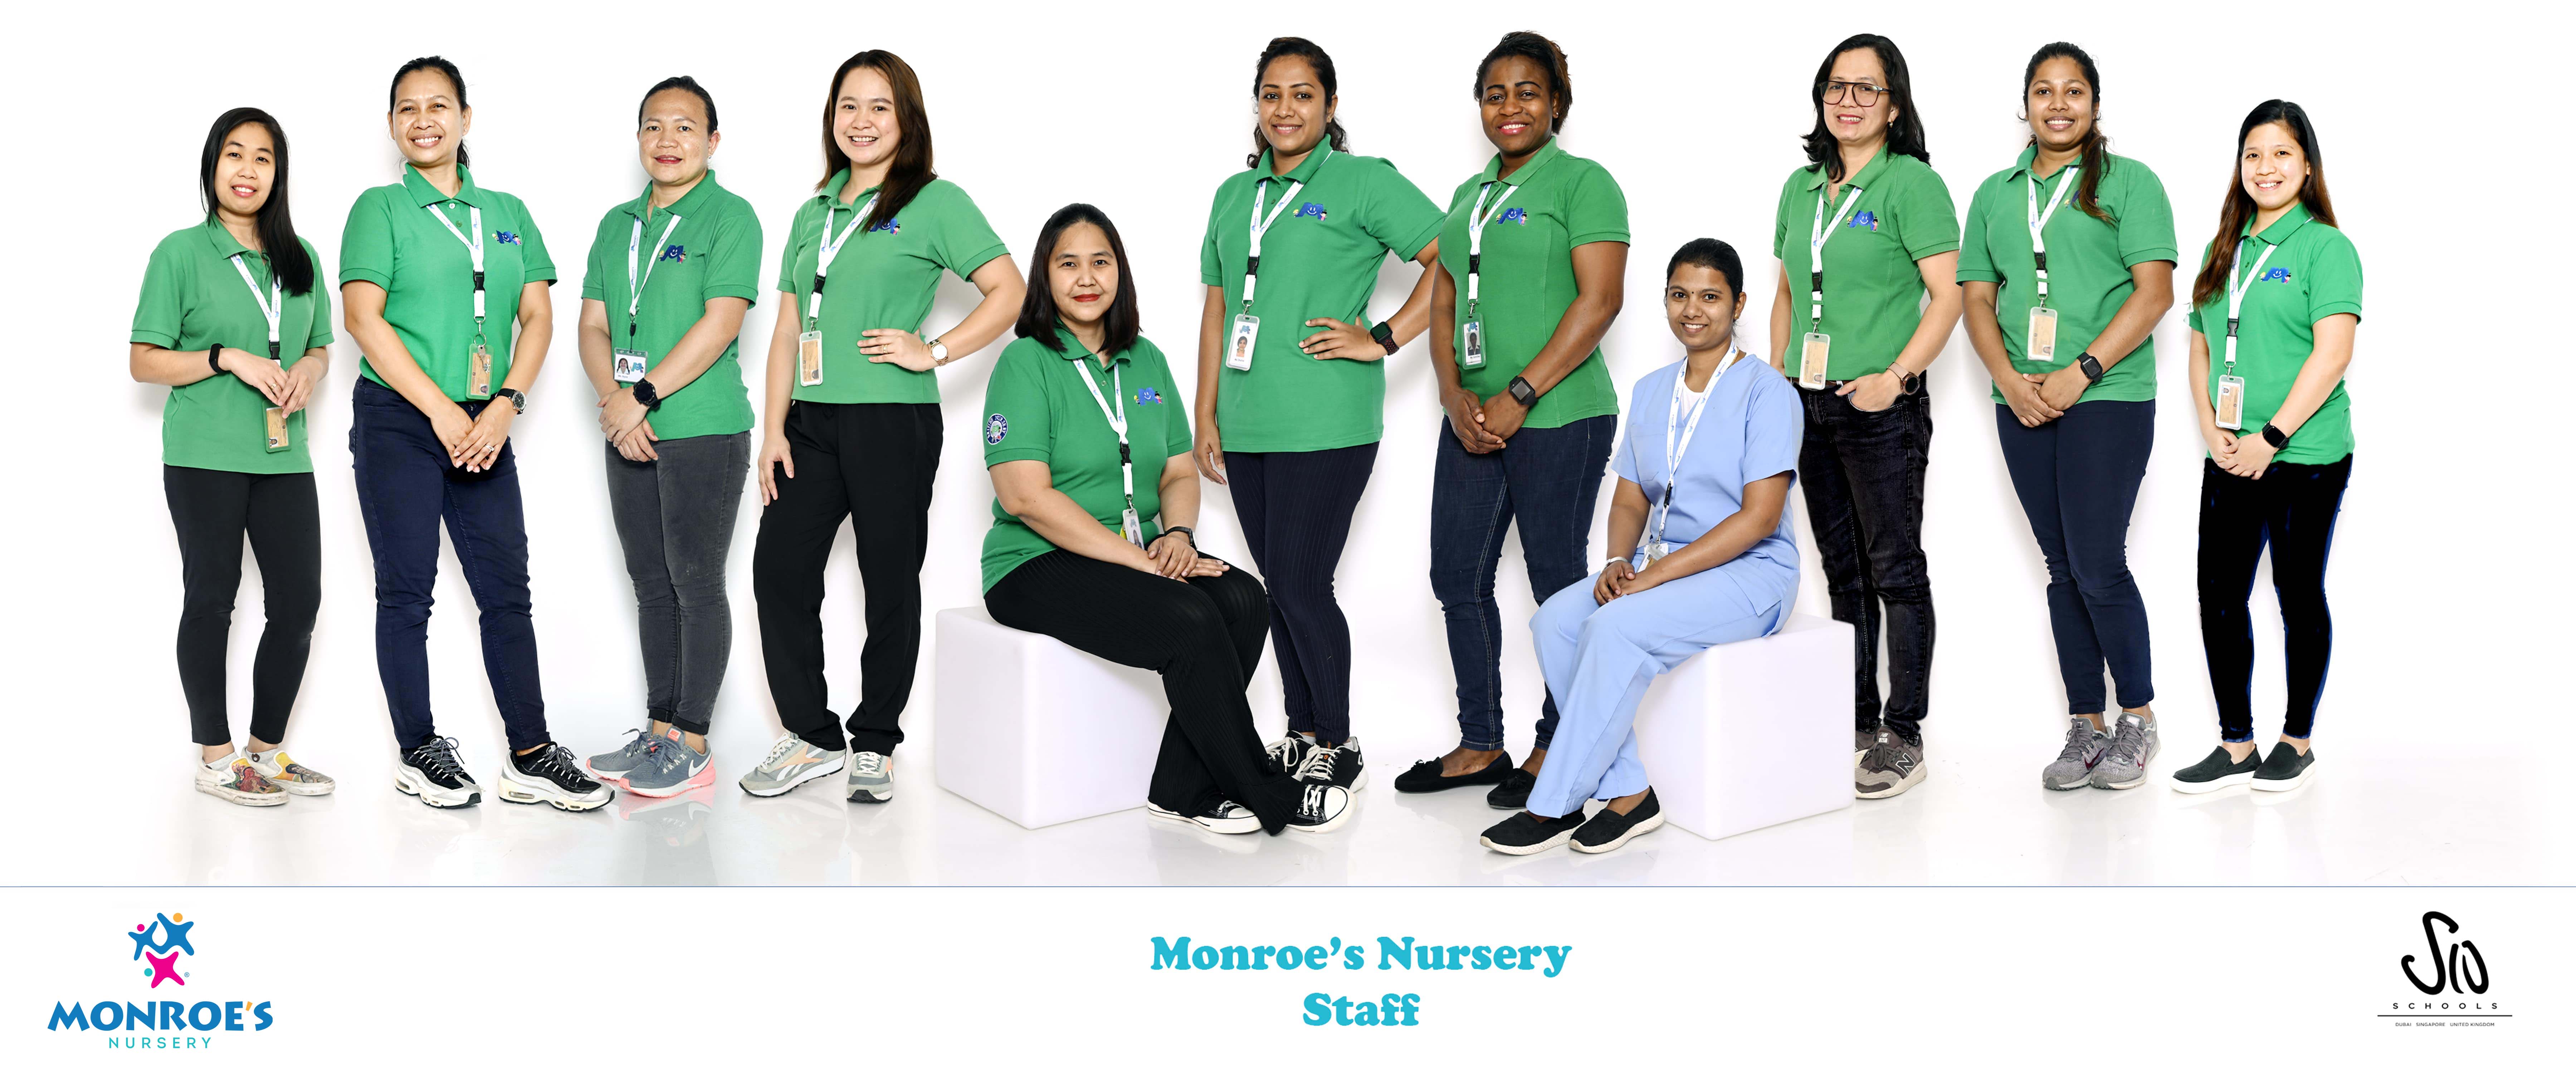 Monroe's Nursery Team